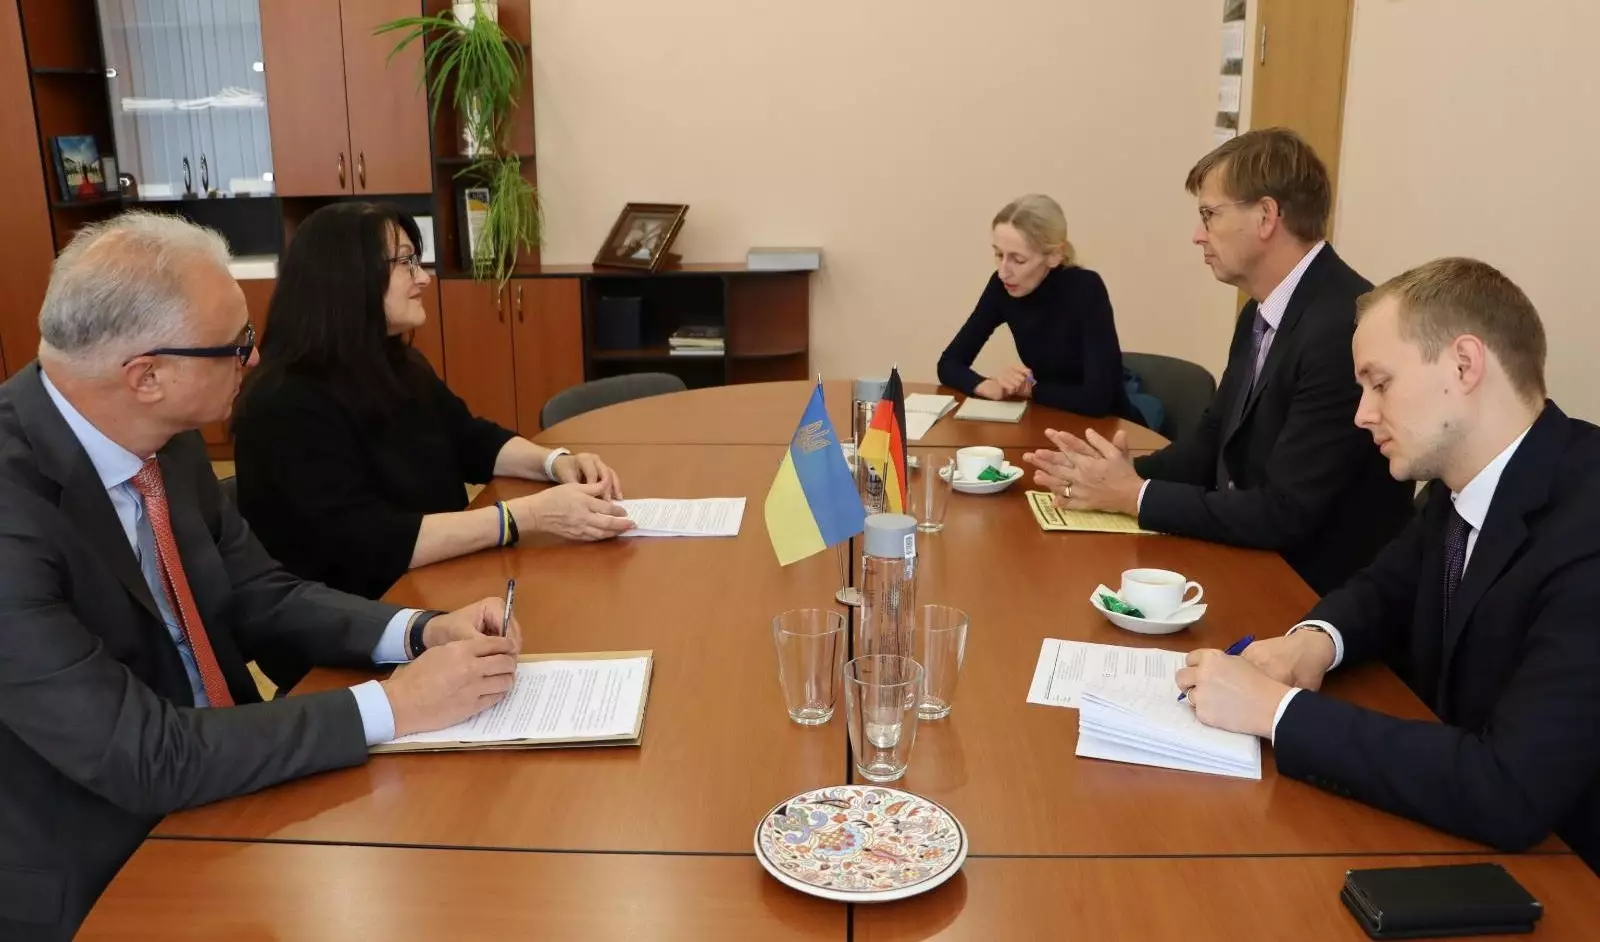 Представники посольства Німеччини в Україні відзначили позитивний досвід співпраці із Суспільним